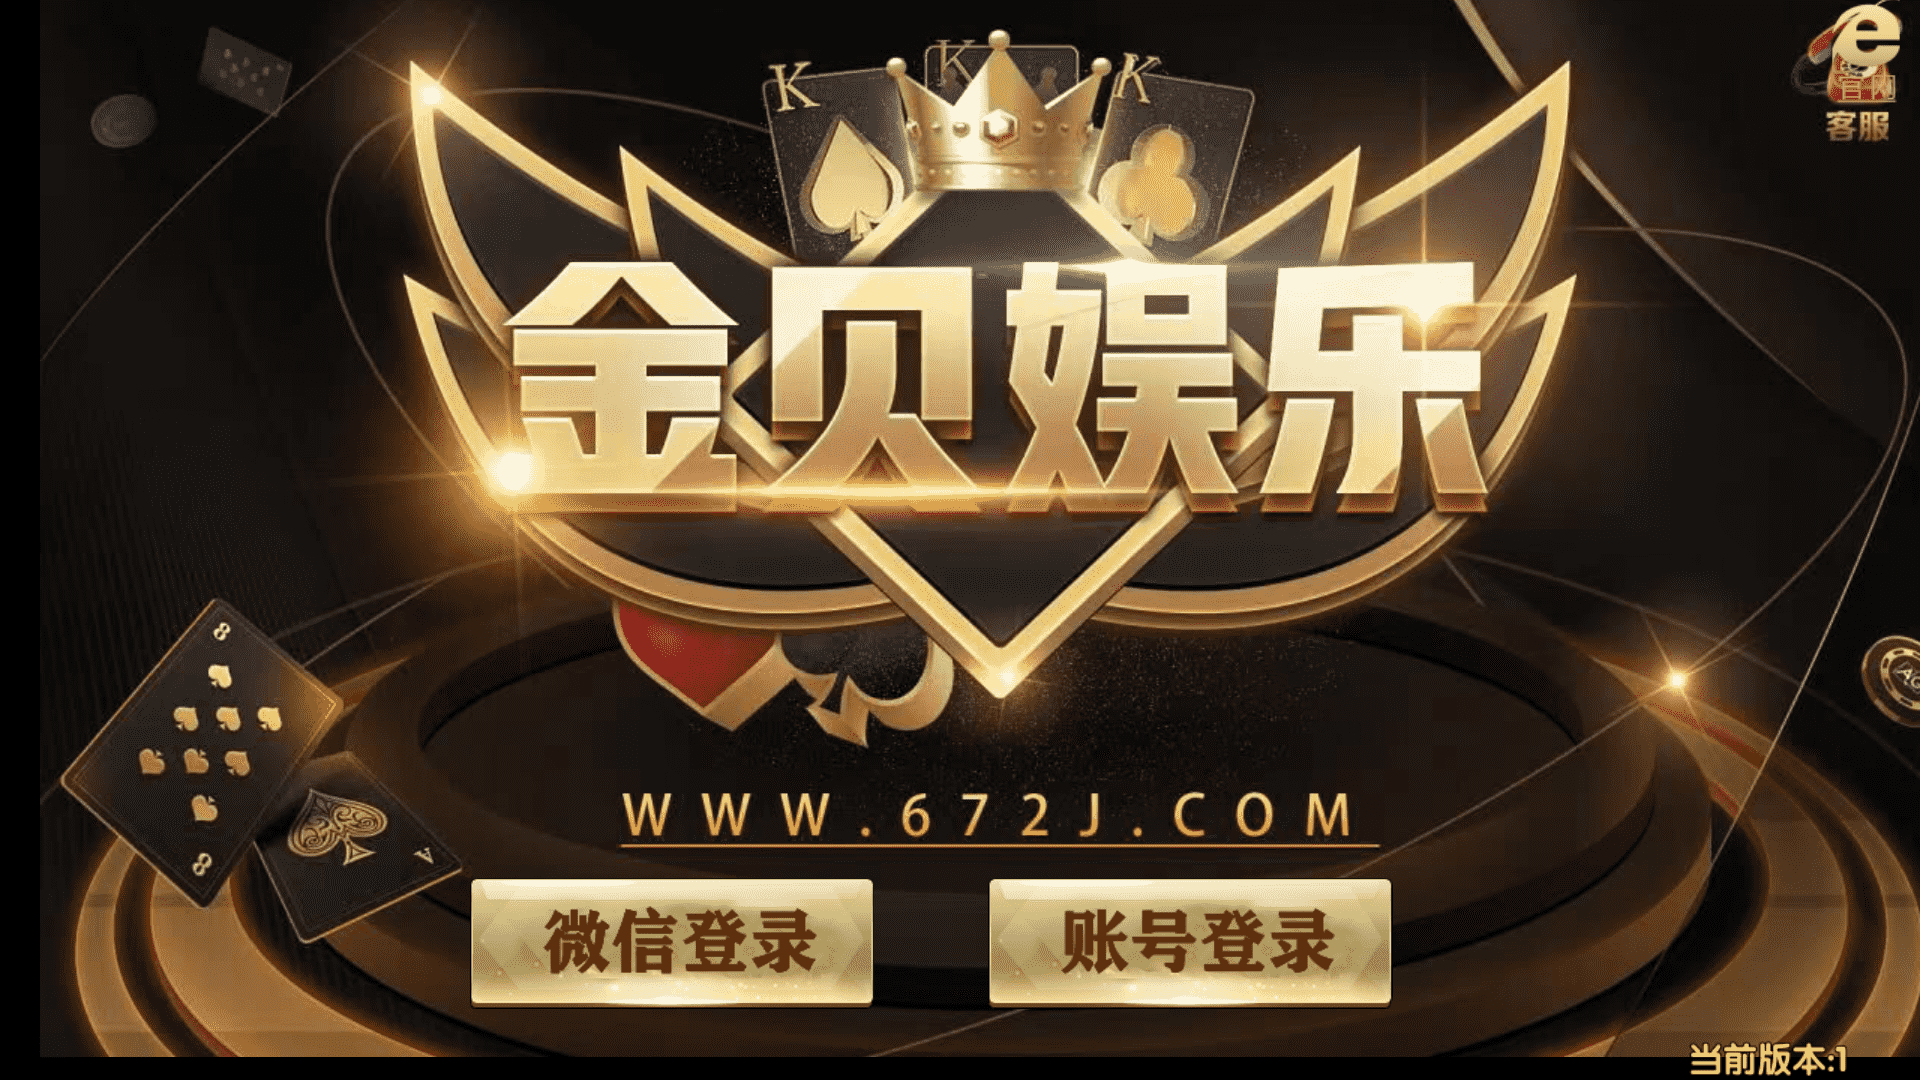 亚游娱乐 万威棋牌 完整运营级别平台-第19张